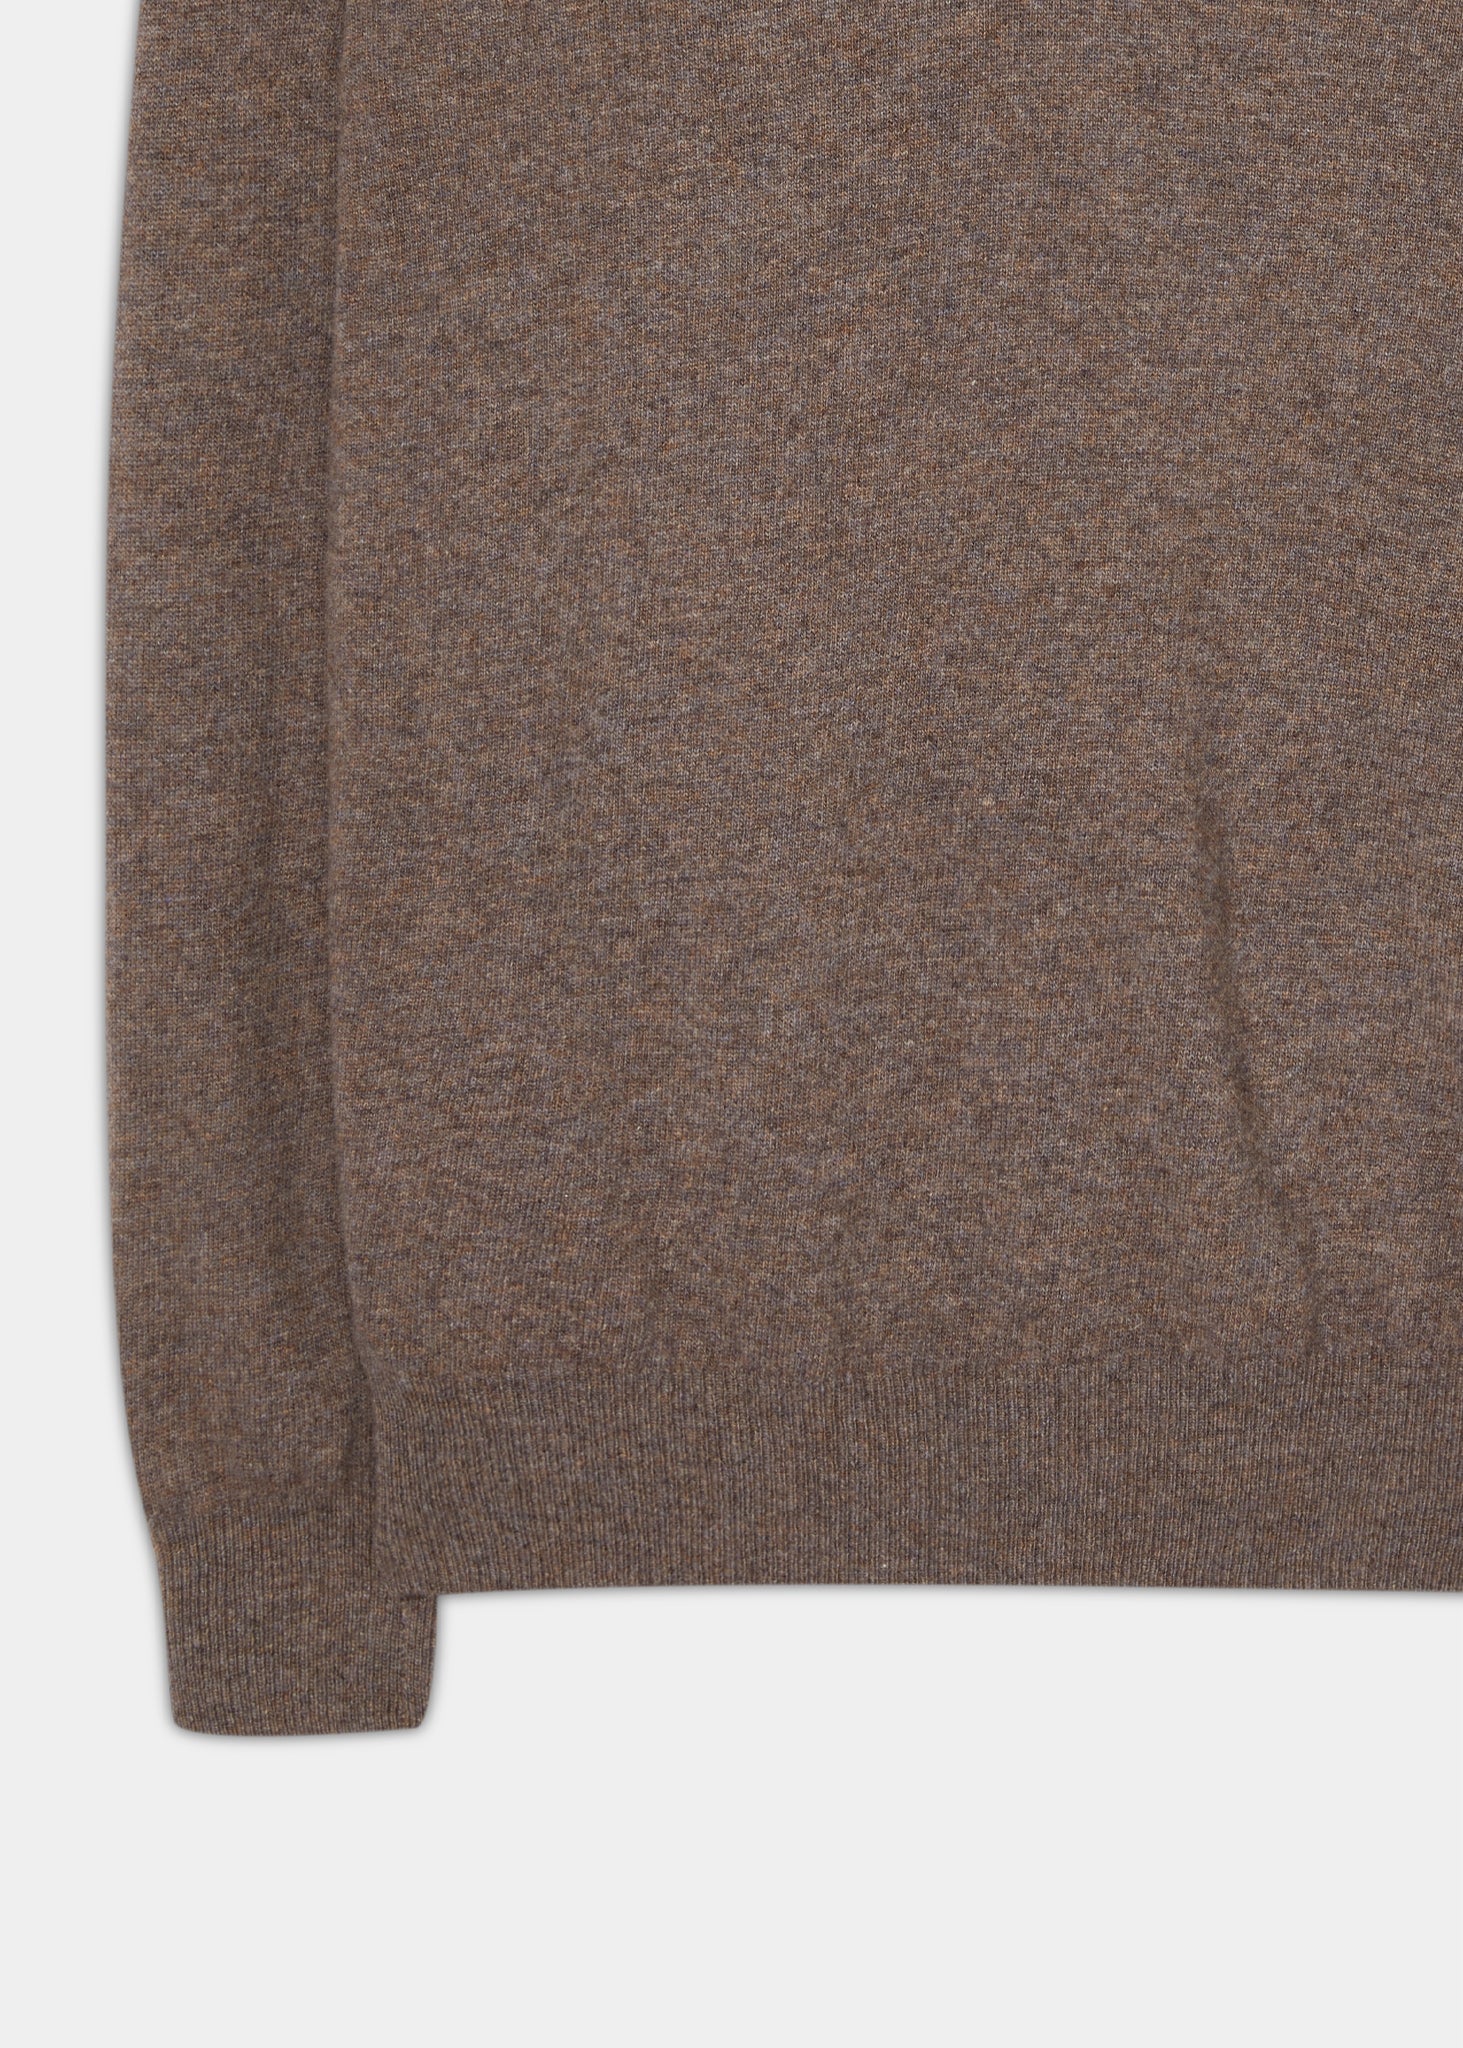 Geelong-Wool-Sweater-Teak